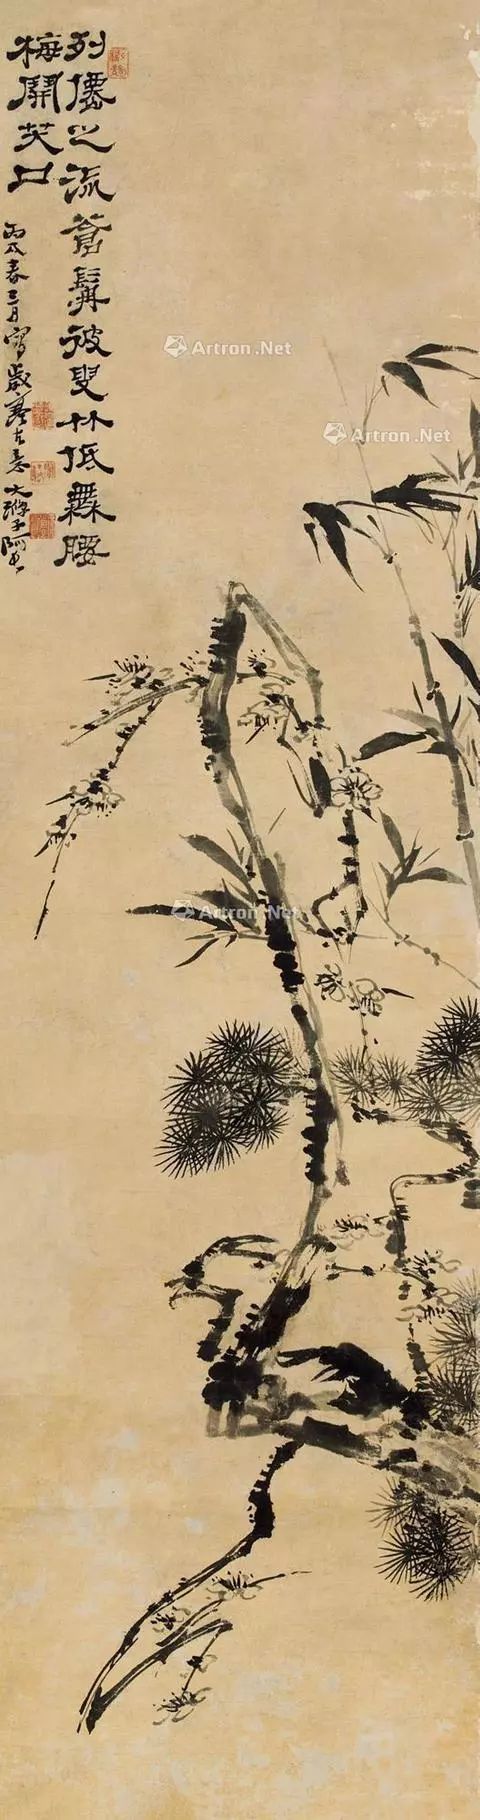 中国文人画里的岁寒三友——松竹梅，平和宁静，超逸淡然_山水